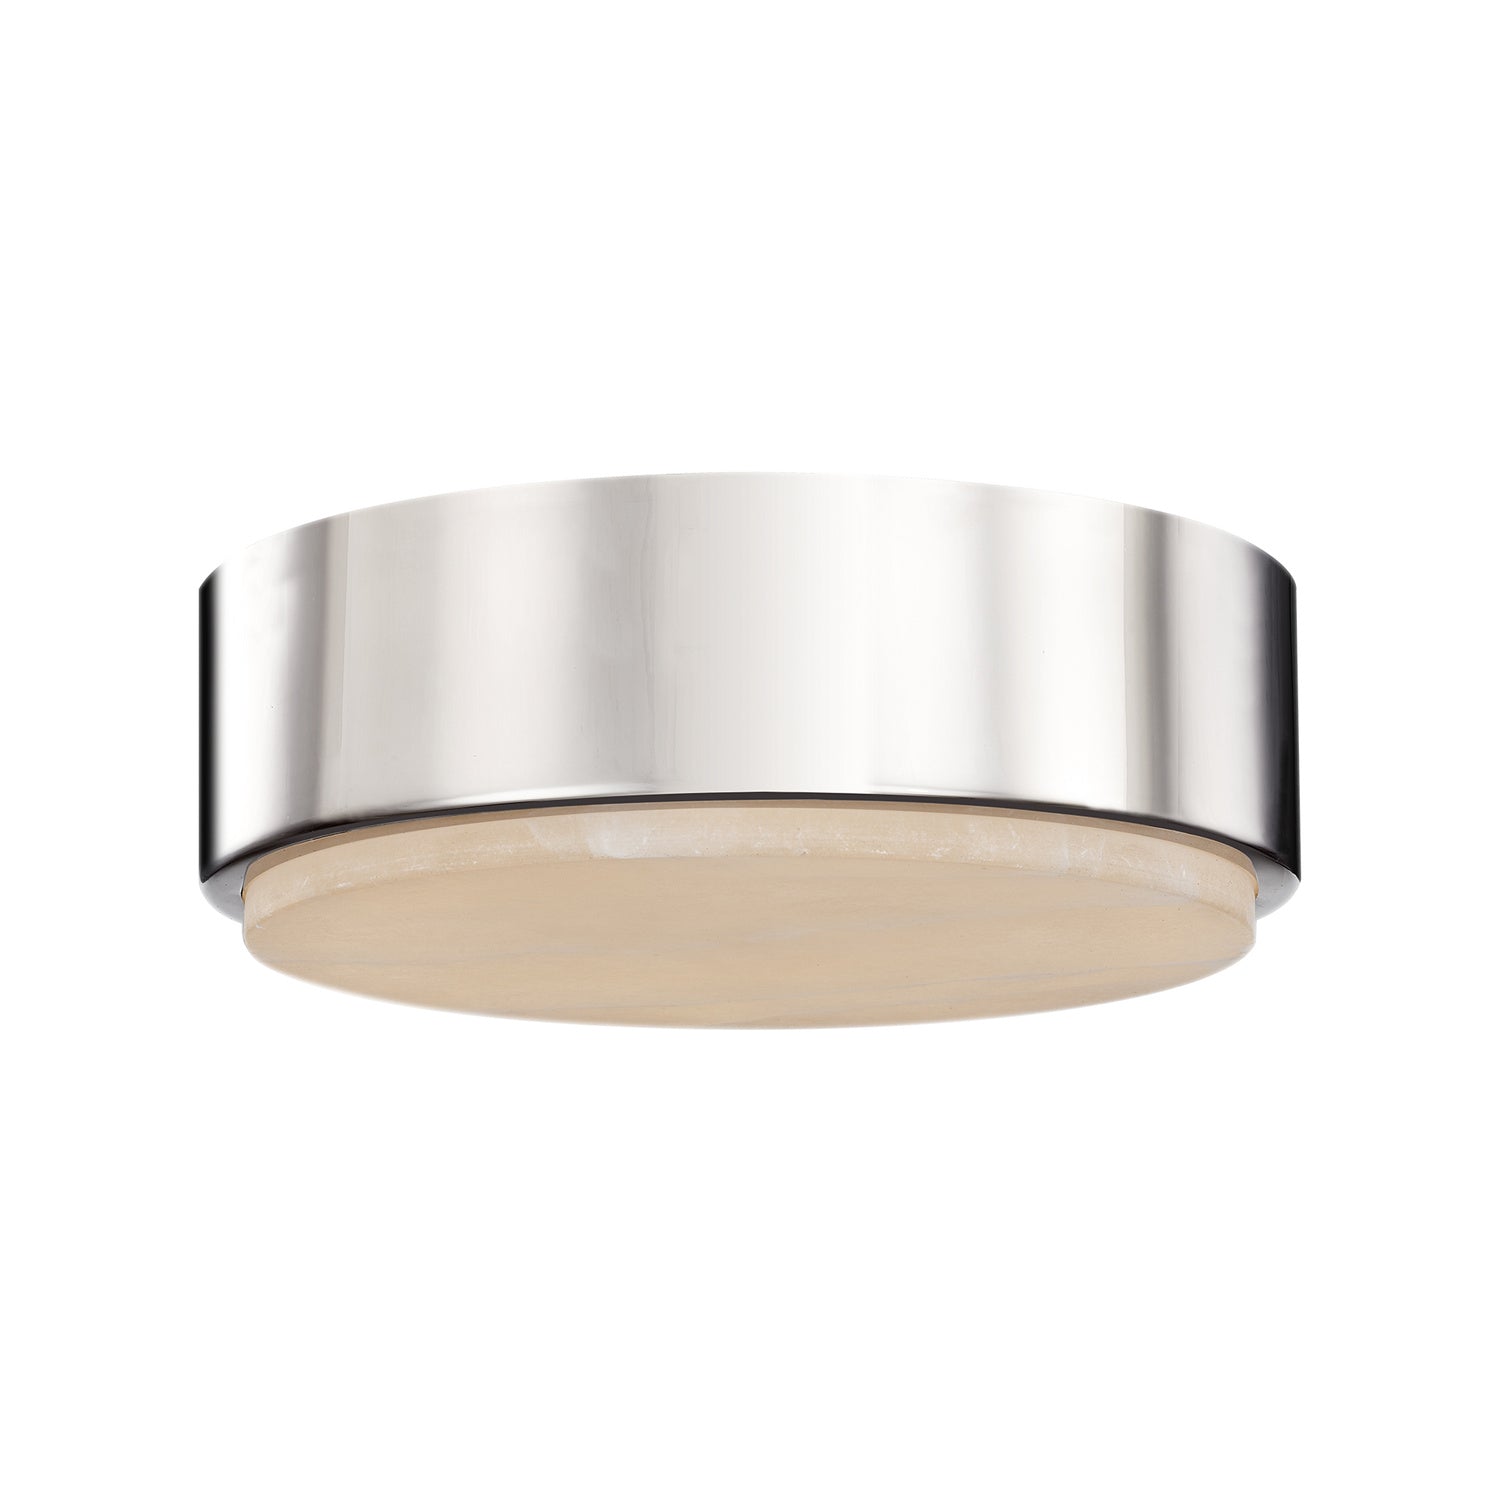 Alora Canada - LED Flush Mount - Blanco - Polished Nickel/Alabaster- Union Lighting Luminaires Decor